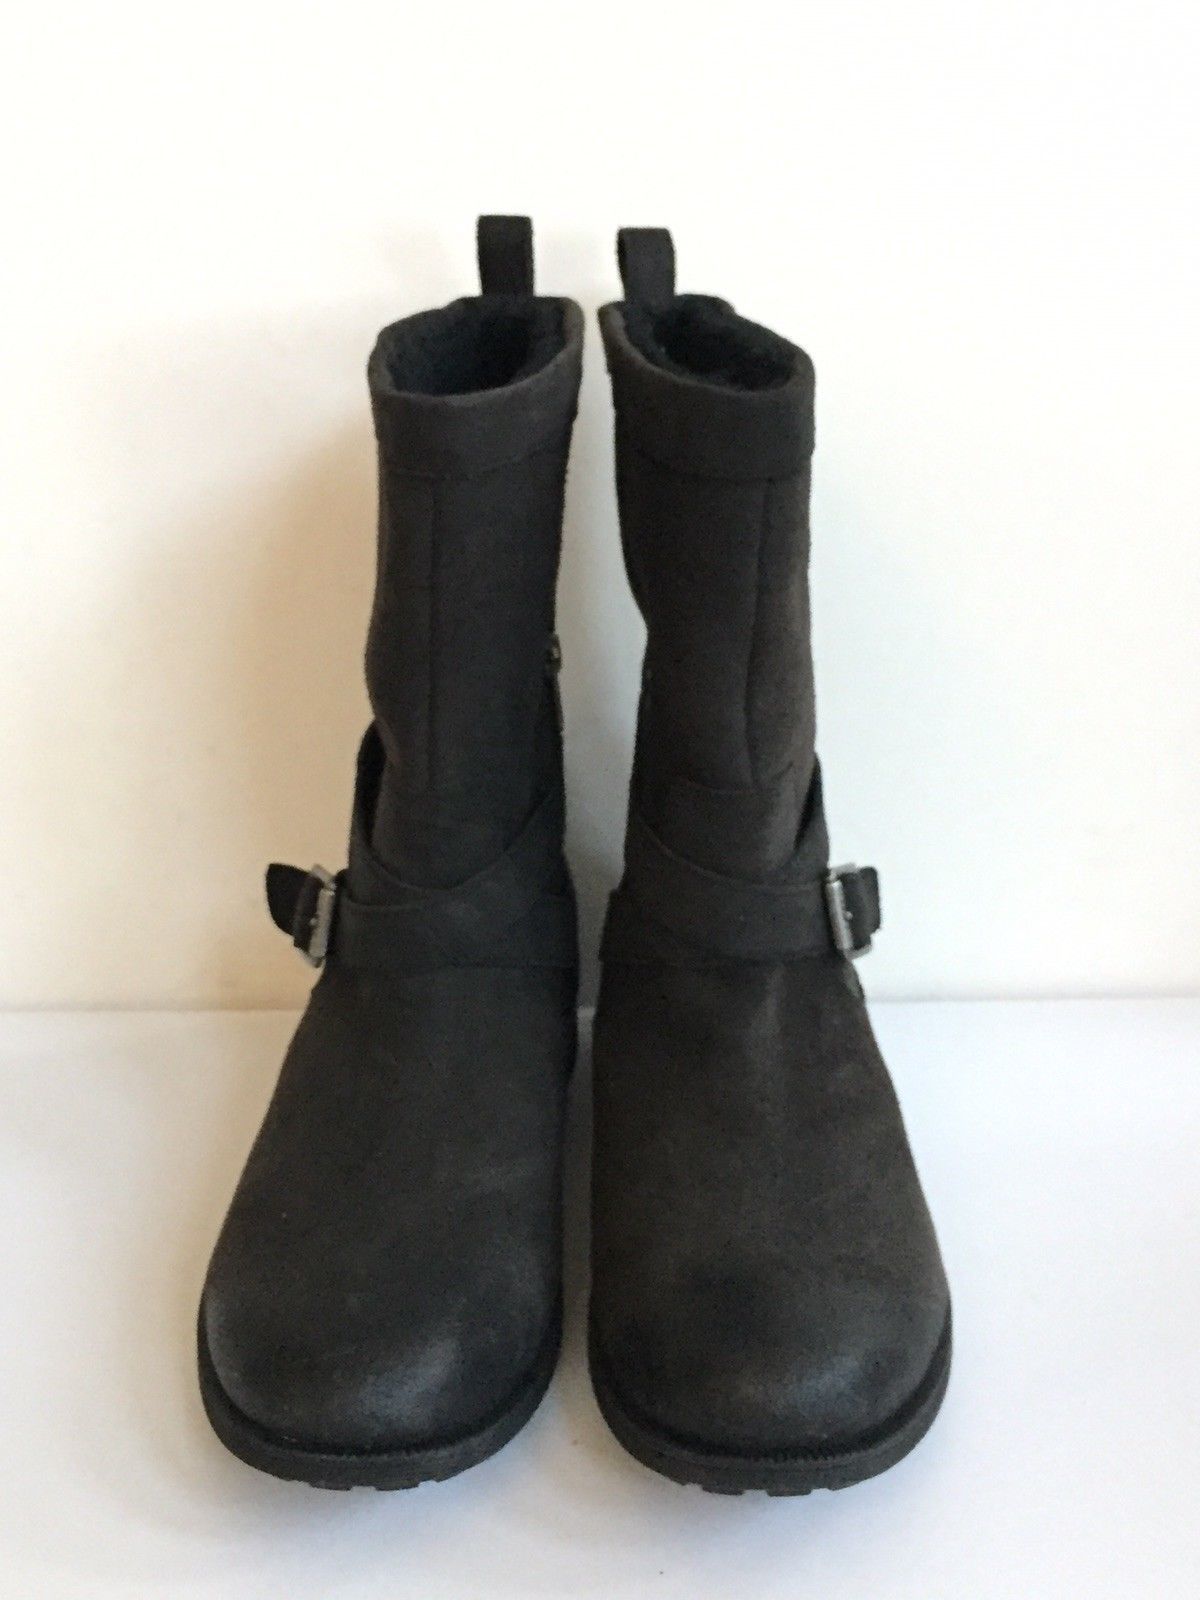 ugg tisdale boots black